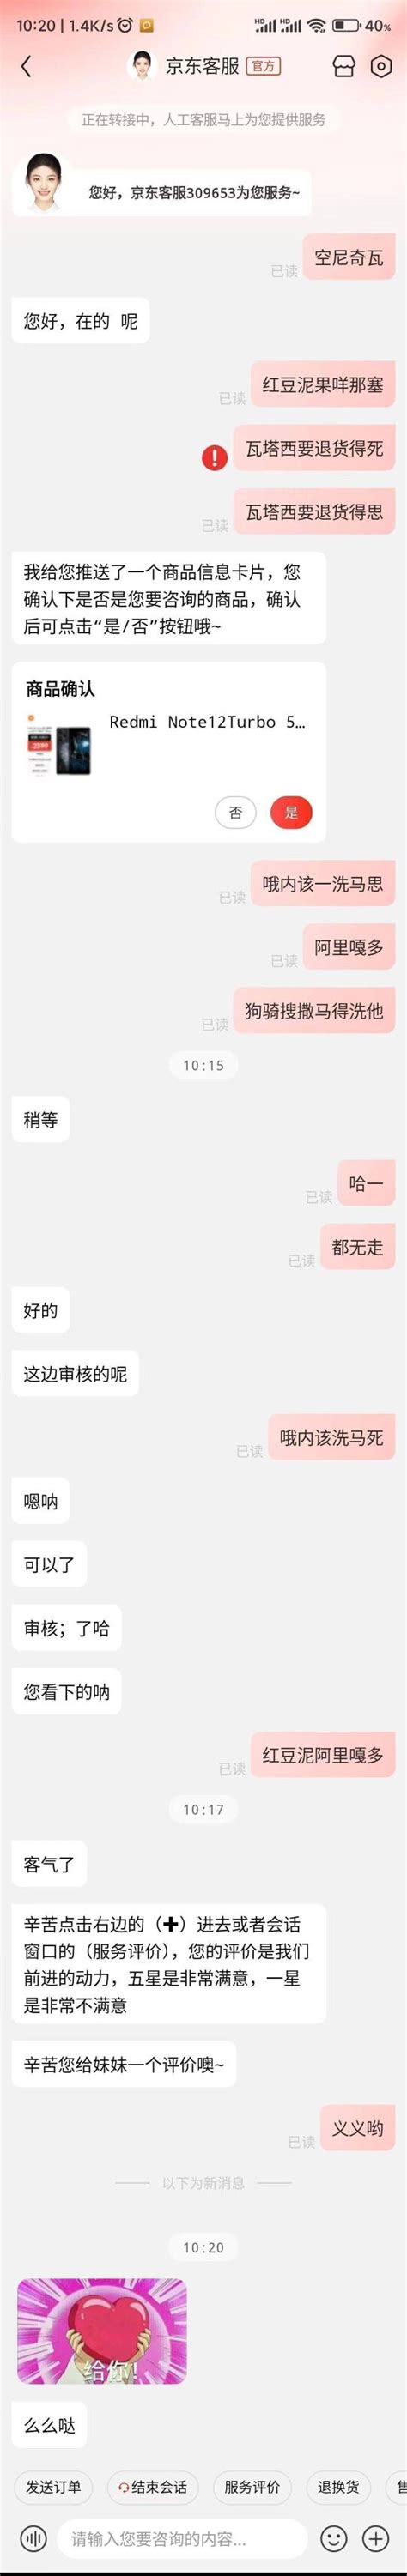 京东客服后台工具的基本操作流程__凤凰网